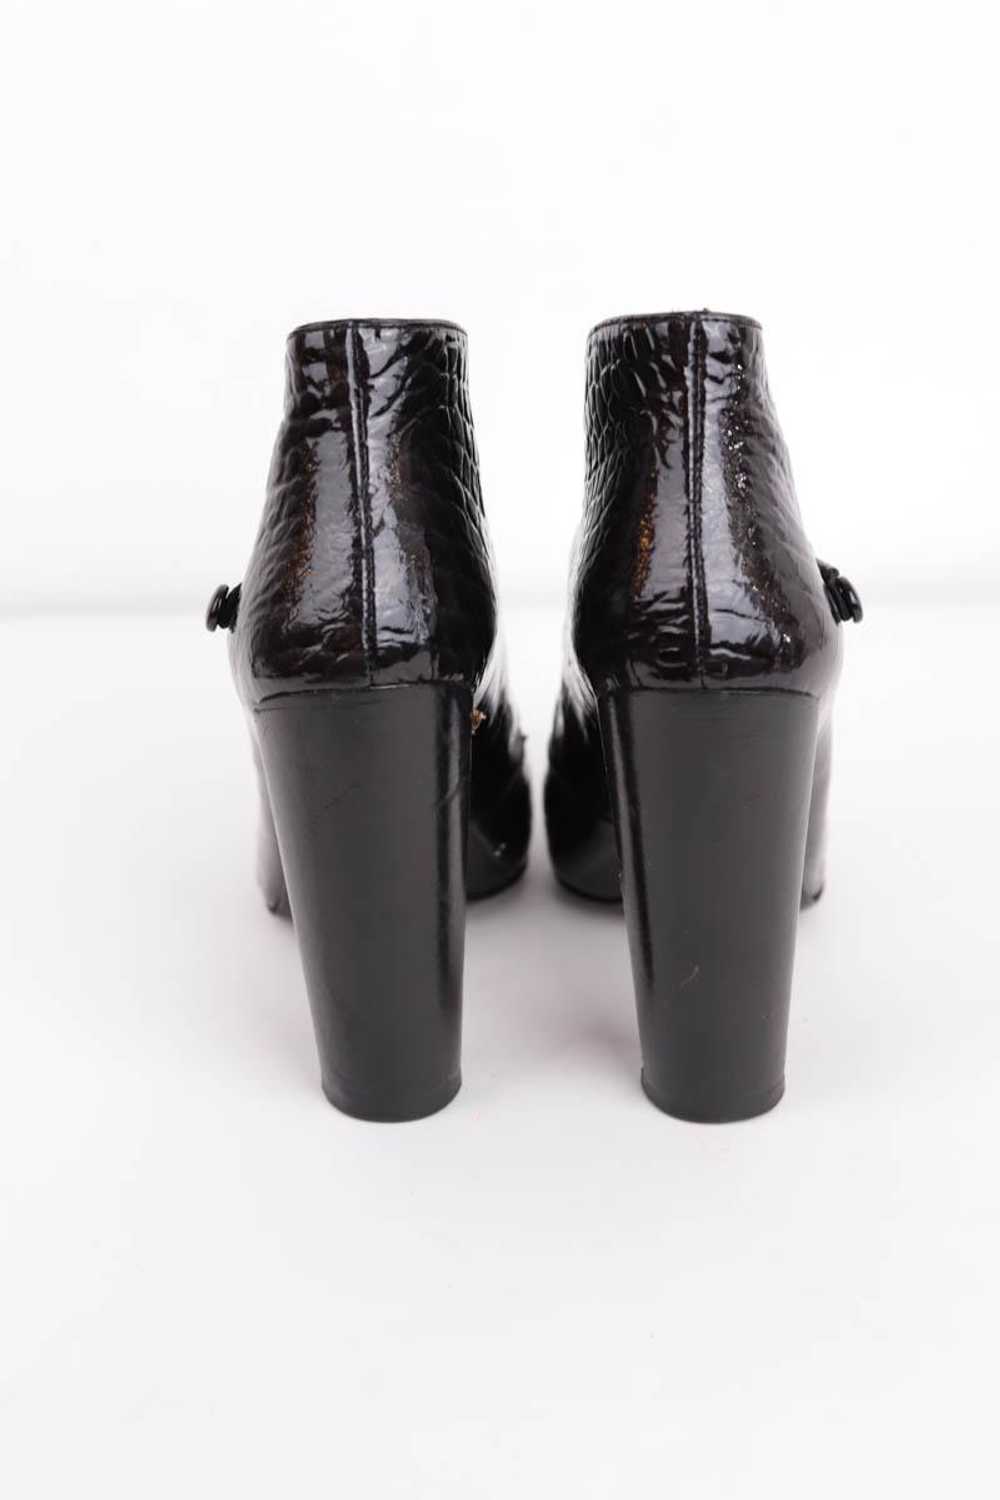 Circular Clothing Boots en cuir Louis Vuitton noi… - image 4